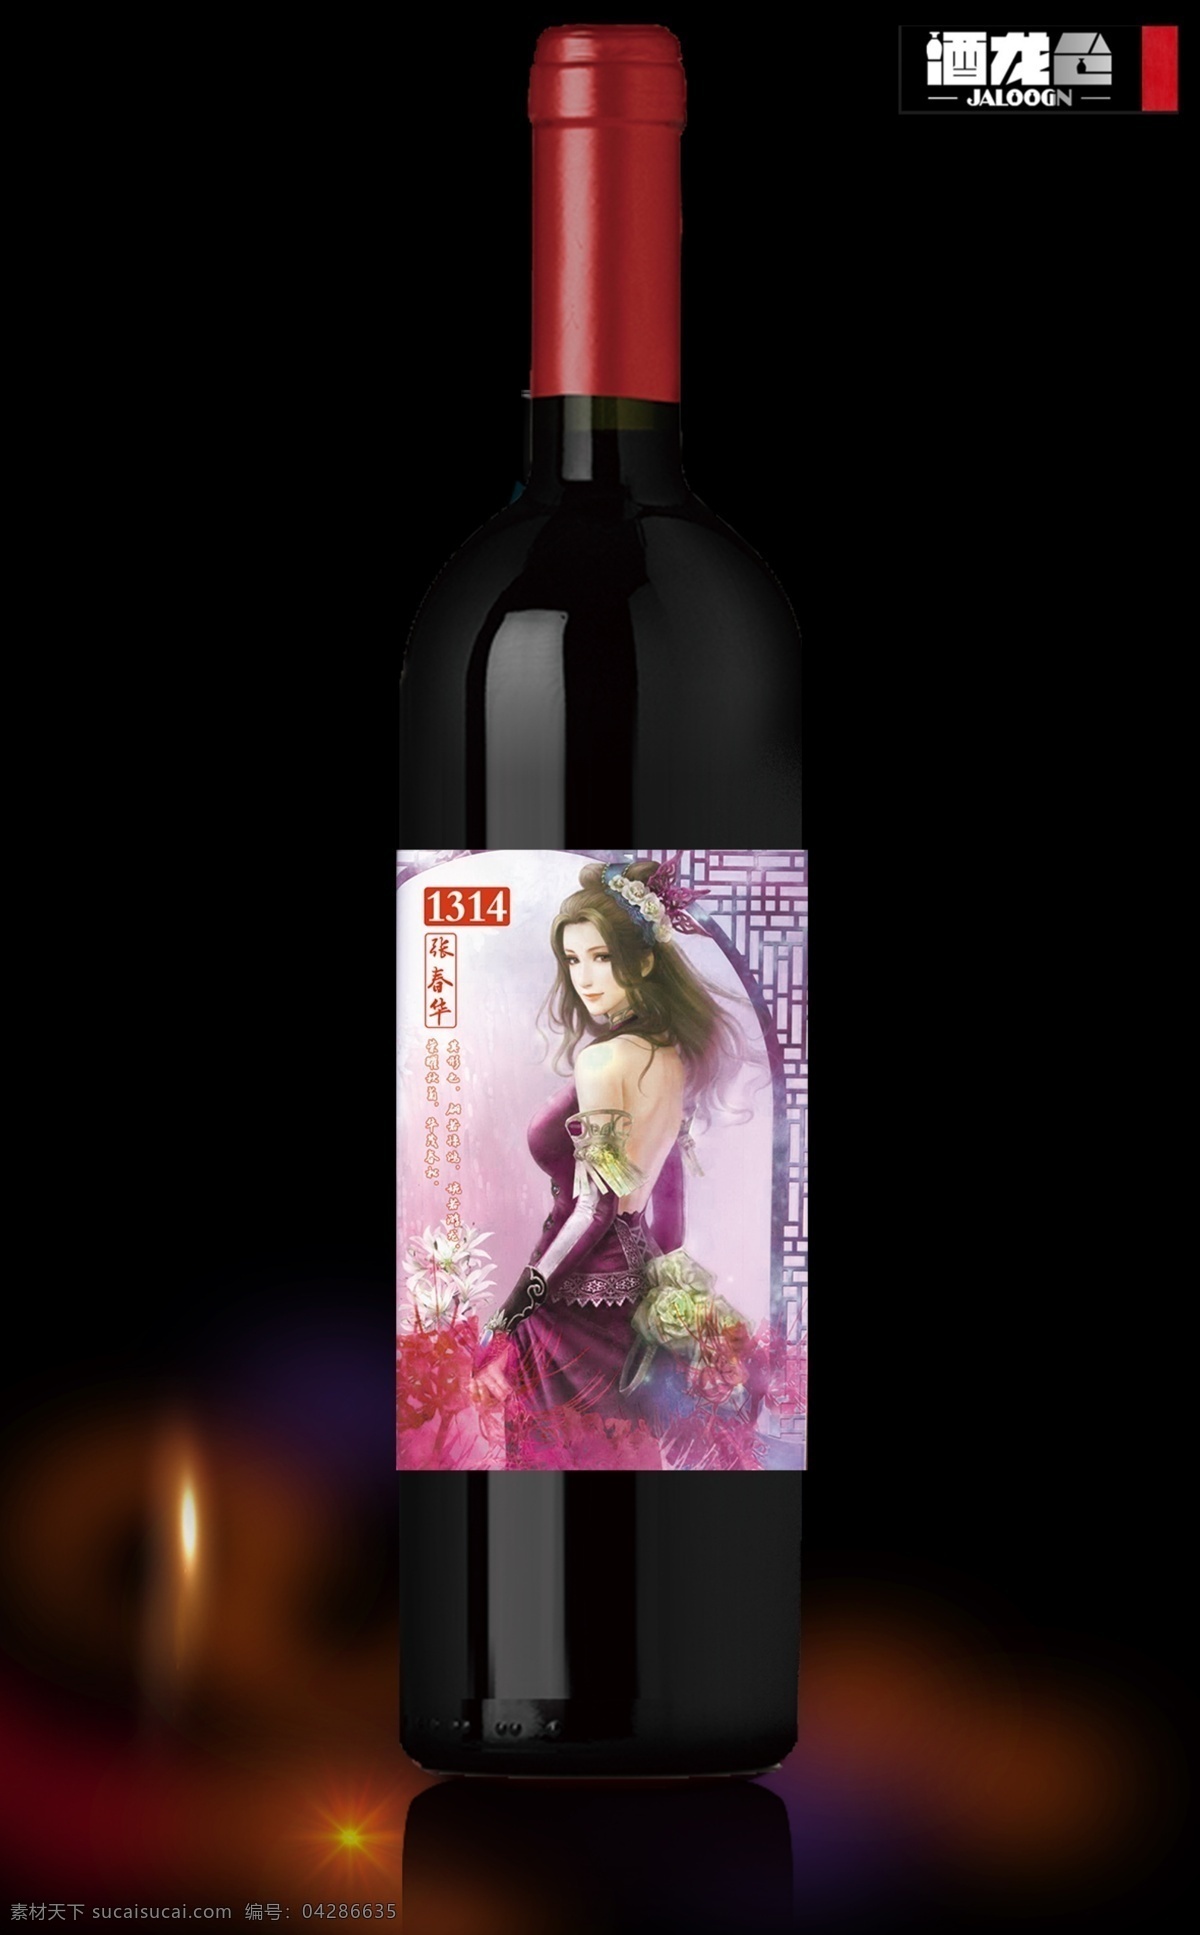 张 春华 场景 红酒 包装 效果图 红酒贴标 系列主题海报